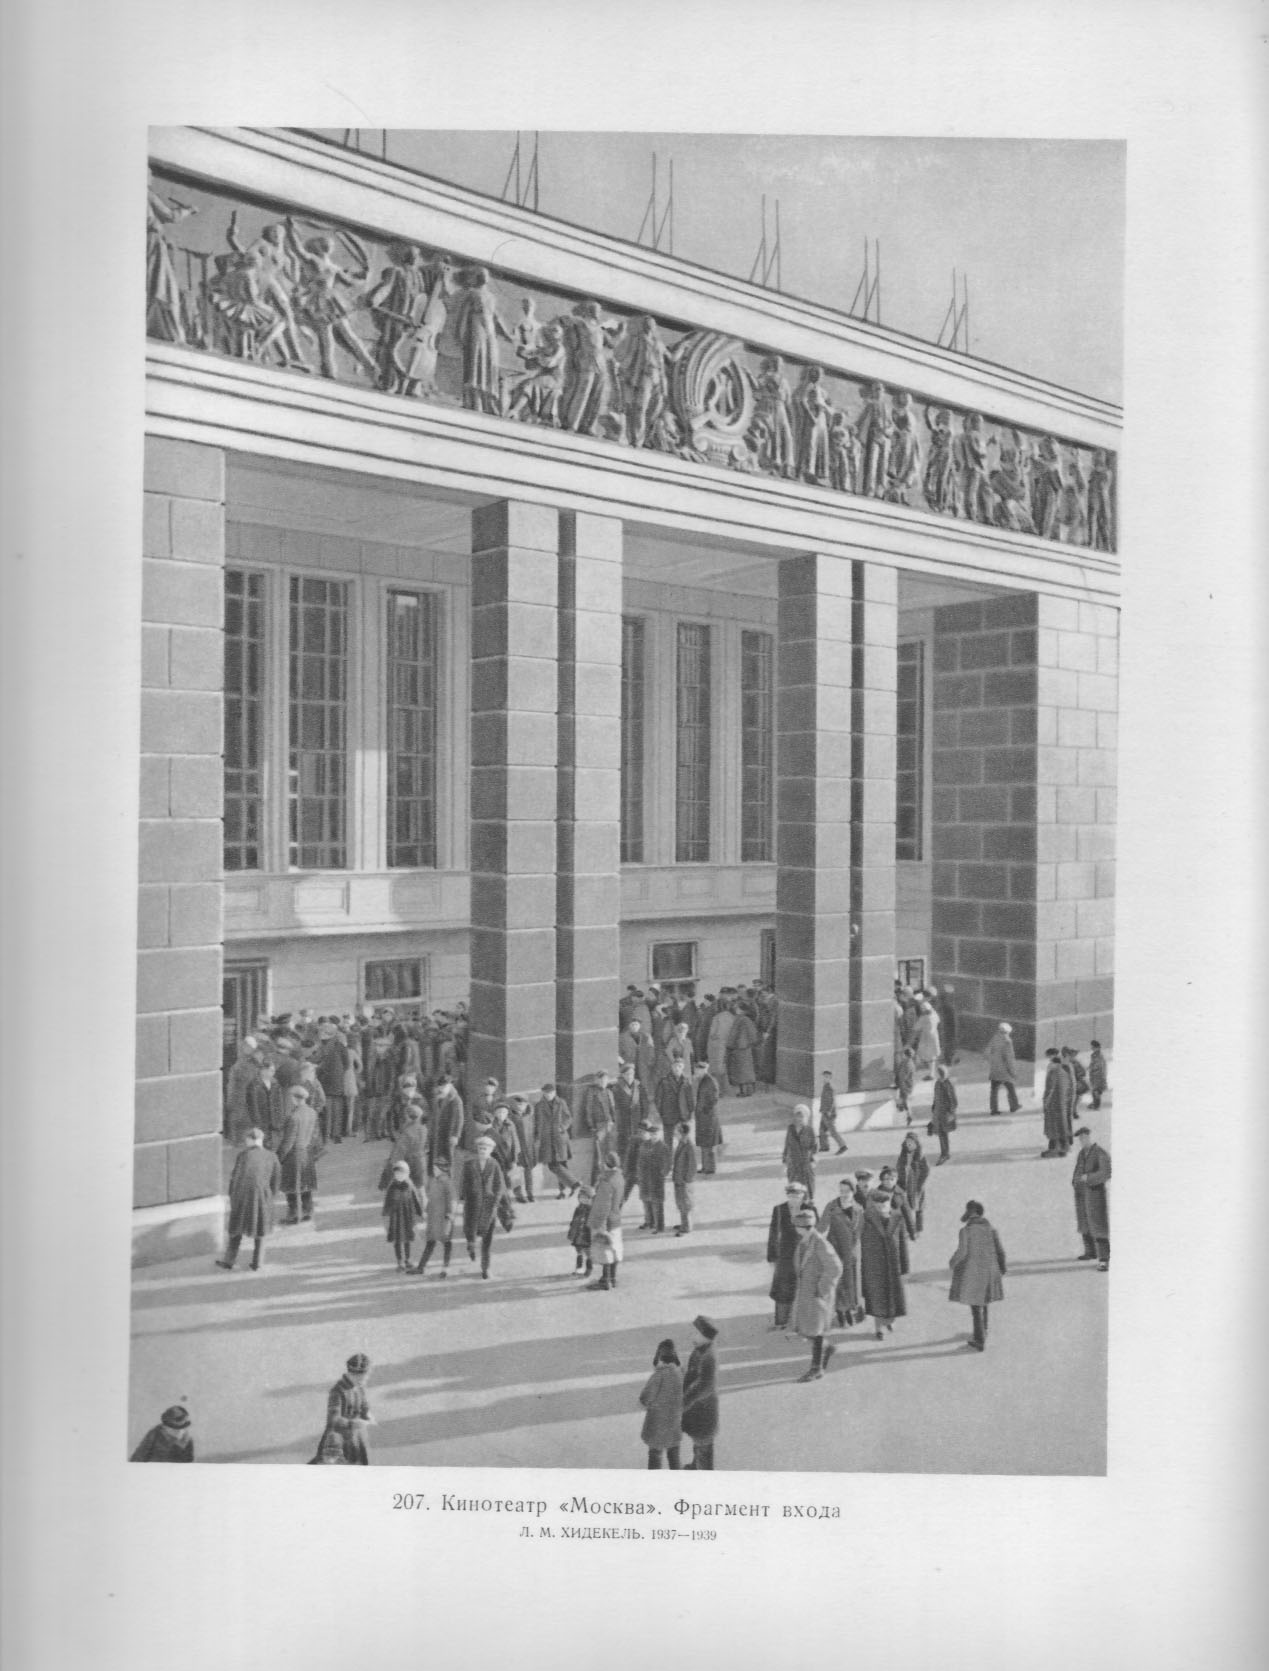 207. Кинотеатр «Москва». Фрагмент входа. Л. М. Xидекель. 1937—1939